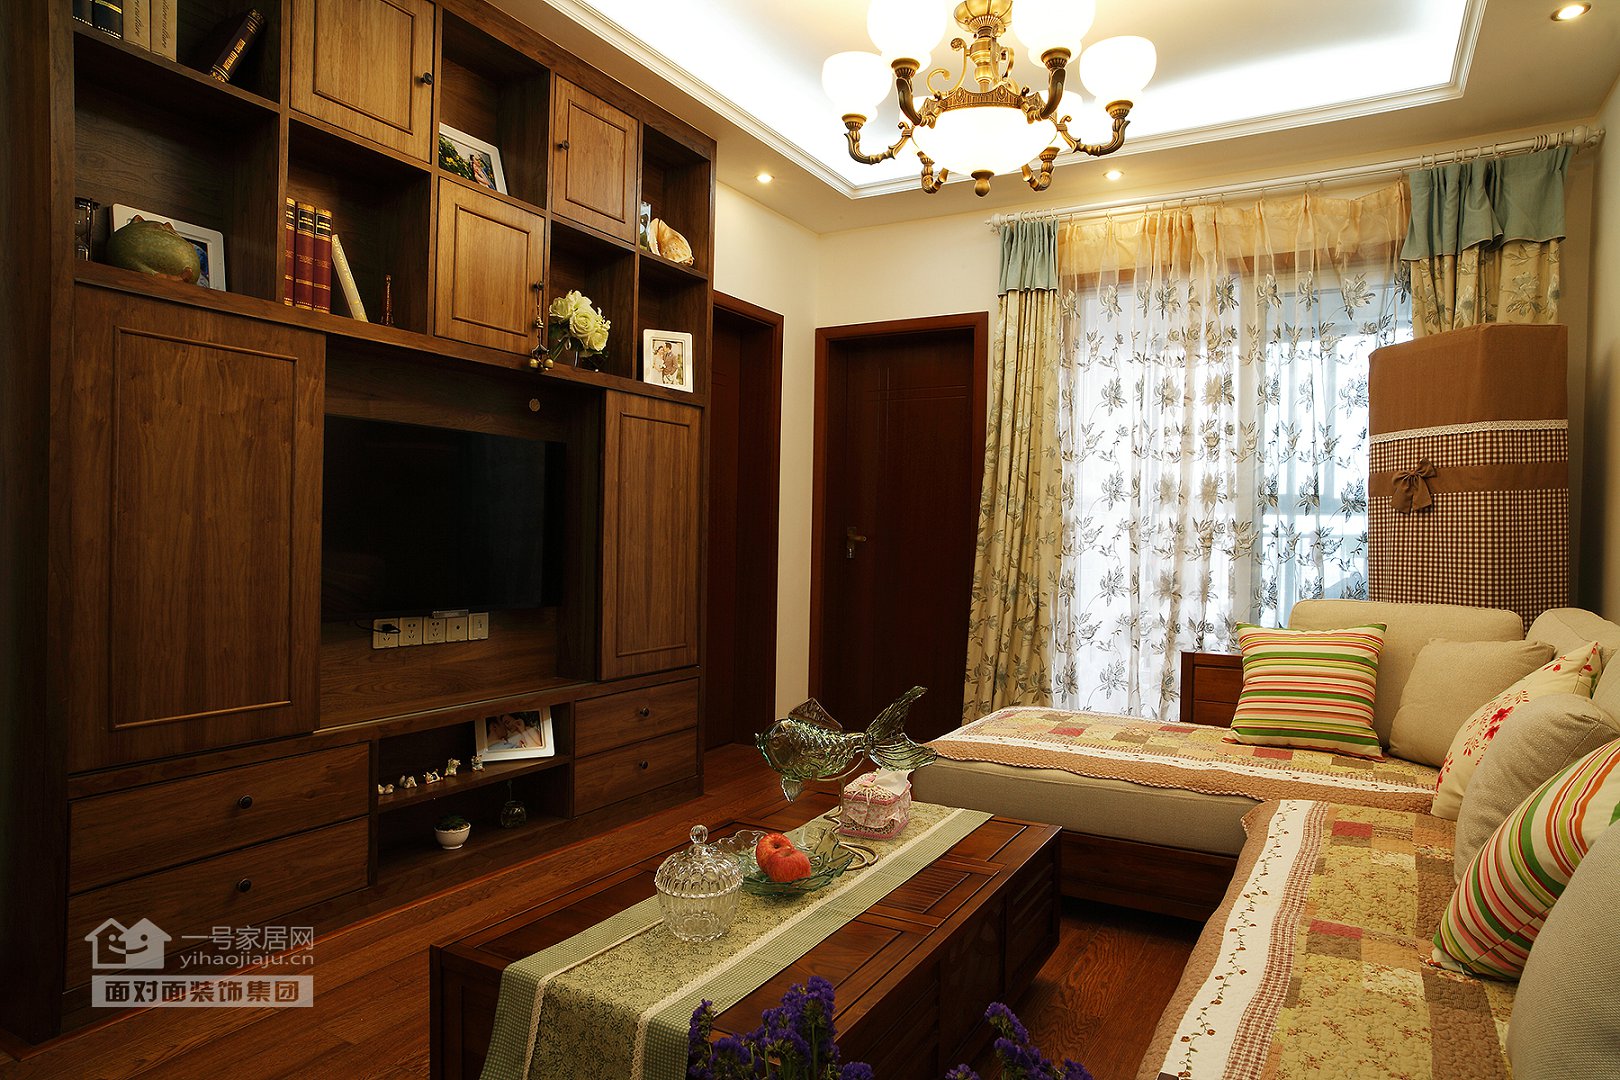 新中式混搭 一号家居网 客厅图片来自武汉一号家居在保利心语  68平米新中式混搭风格的分享